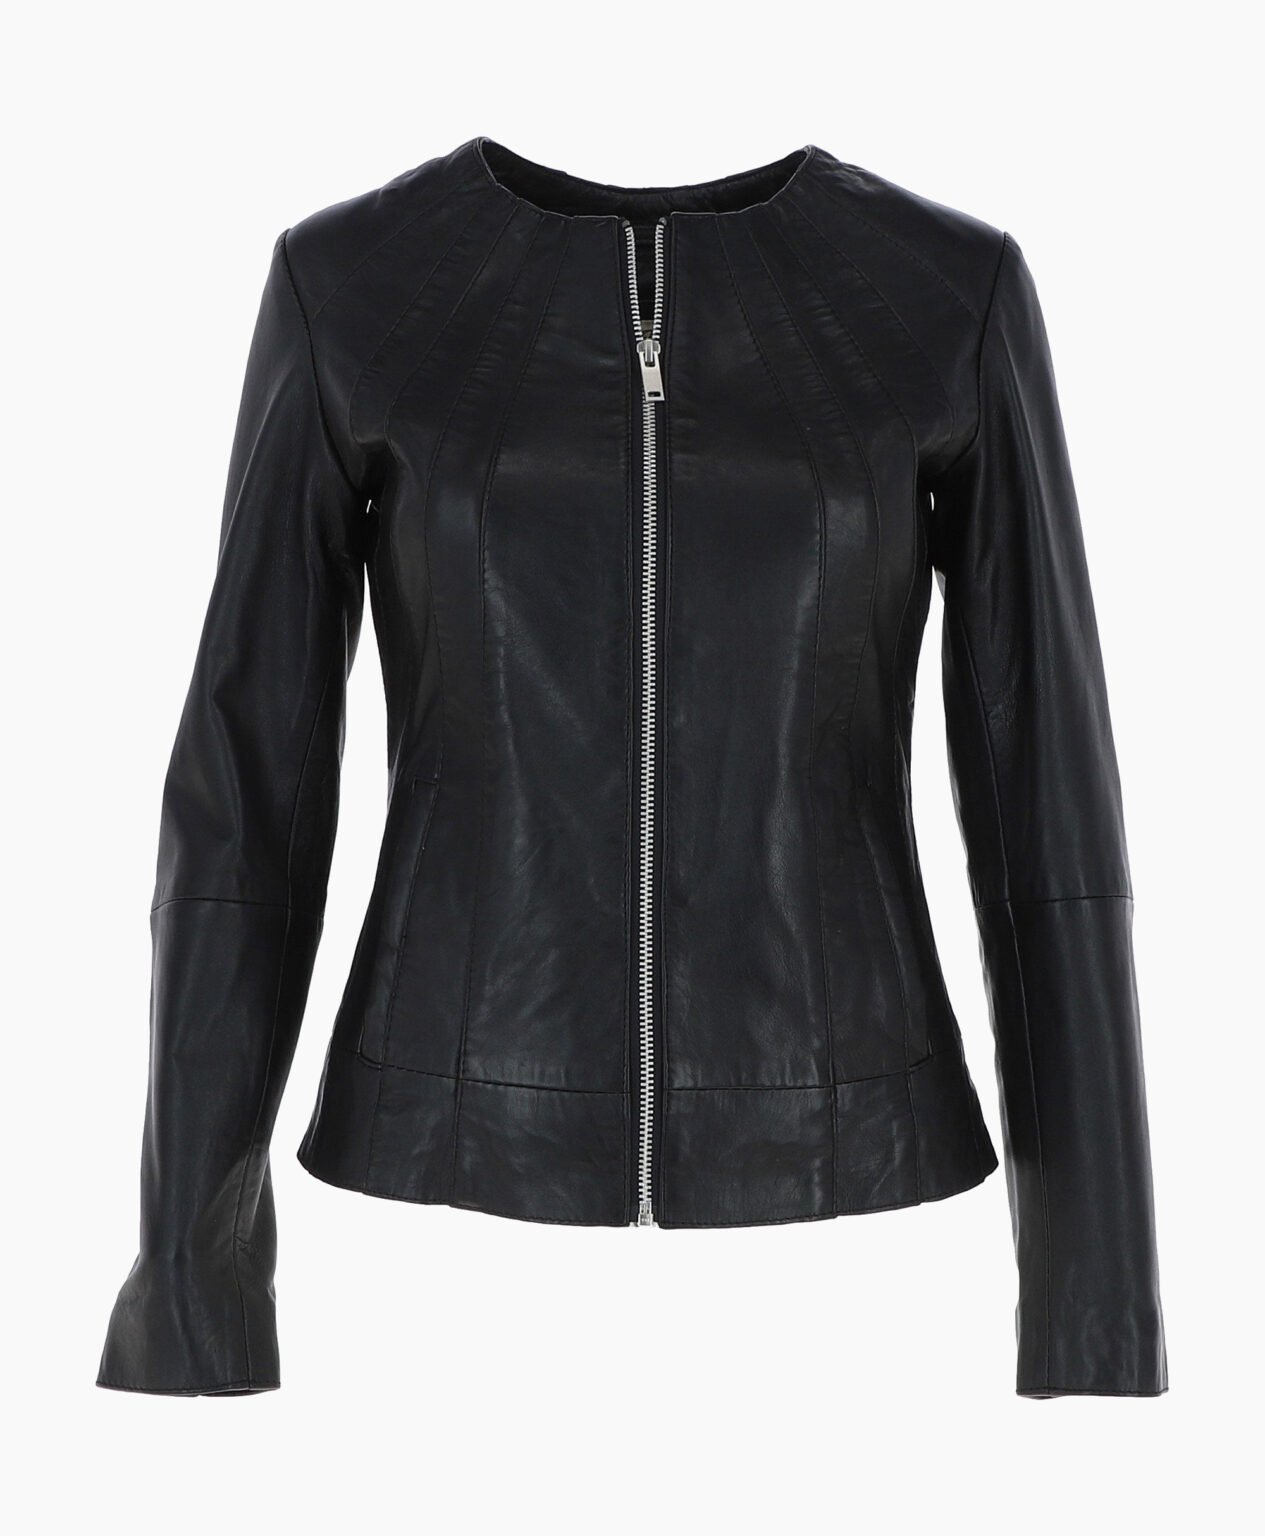 vogue-jacket-leather-jacket-black-cordova-image-200